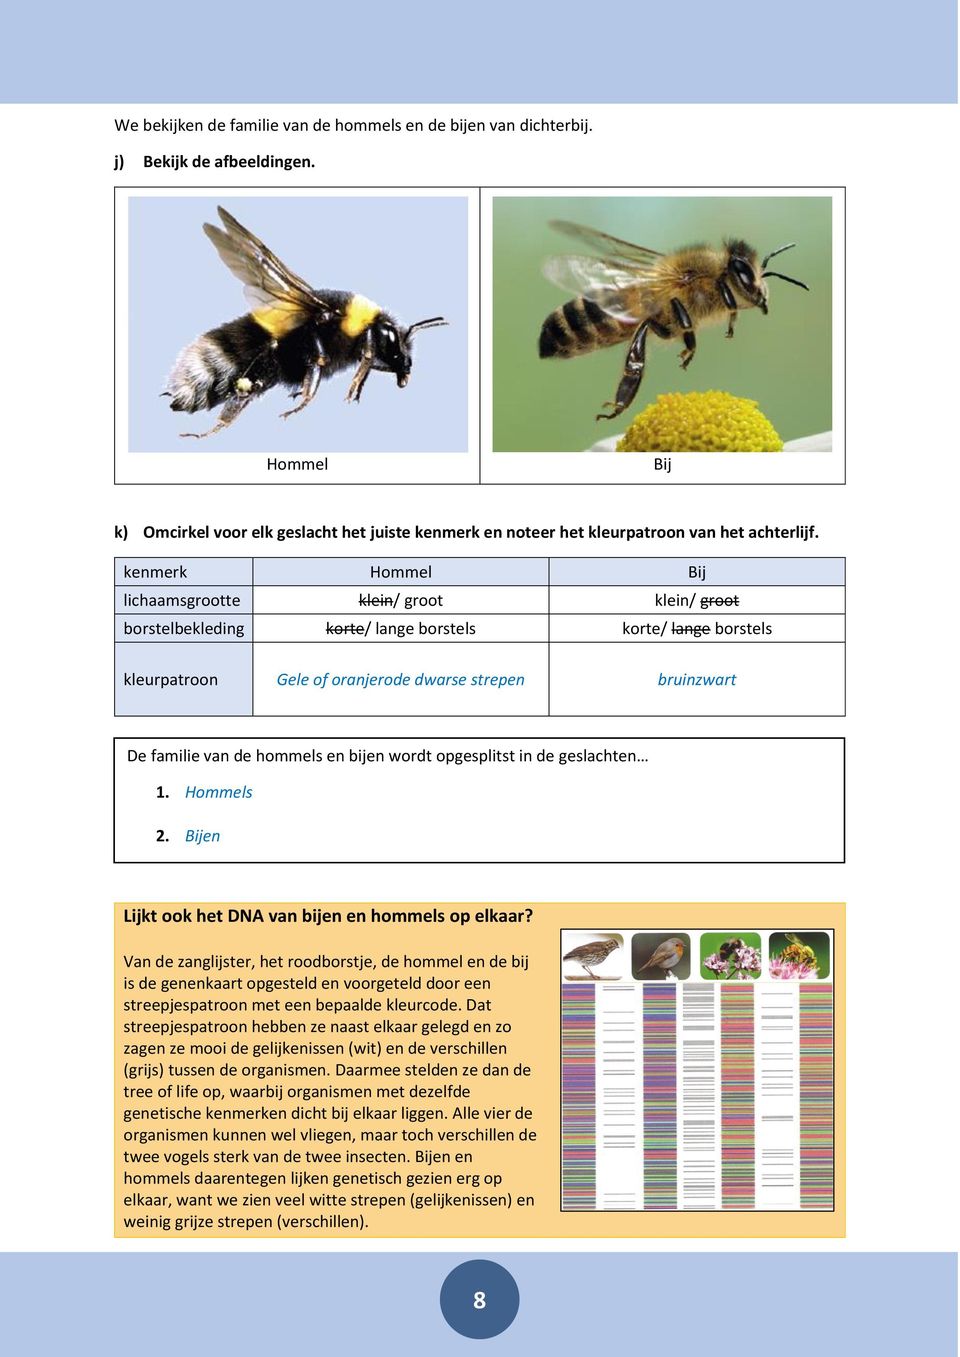 hommels en bijen wordt opgesplitst in de geslachten 1. Hommels 2. Bijen Lijkt ook het DNA van bijen en hommels op elkaar?